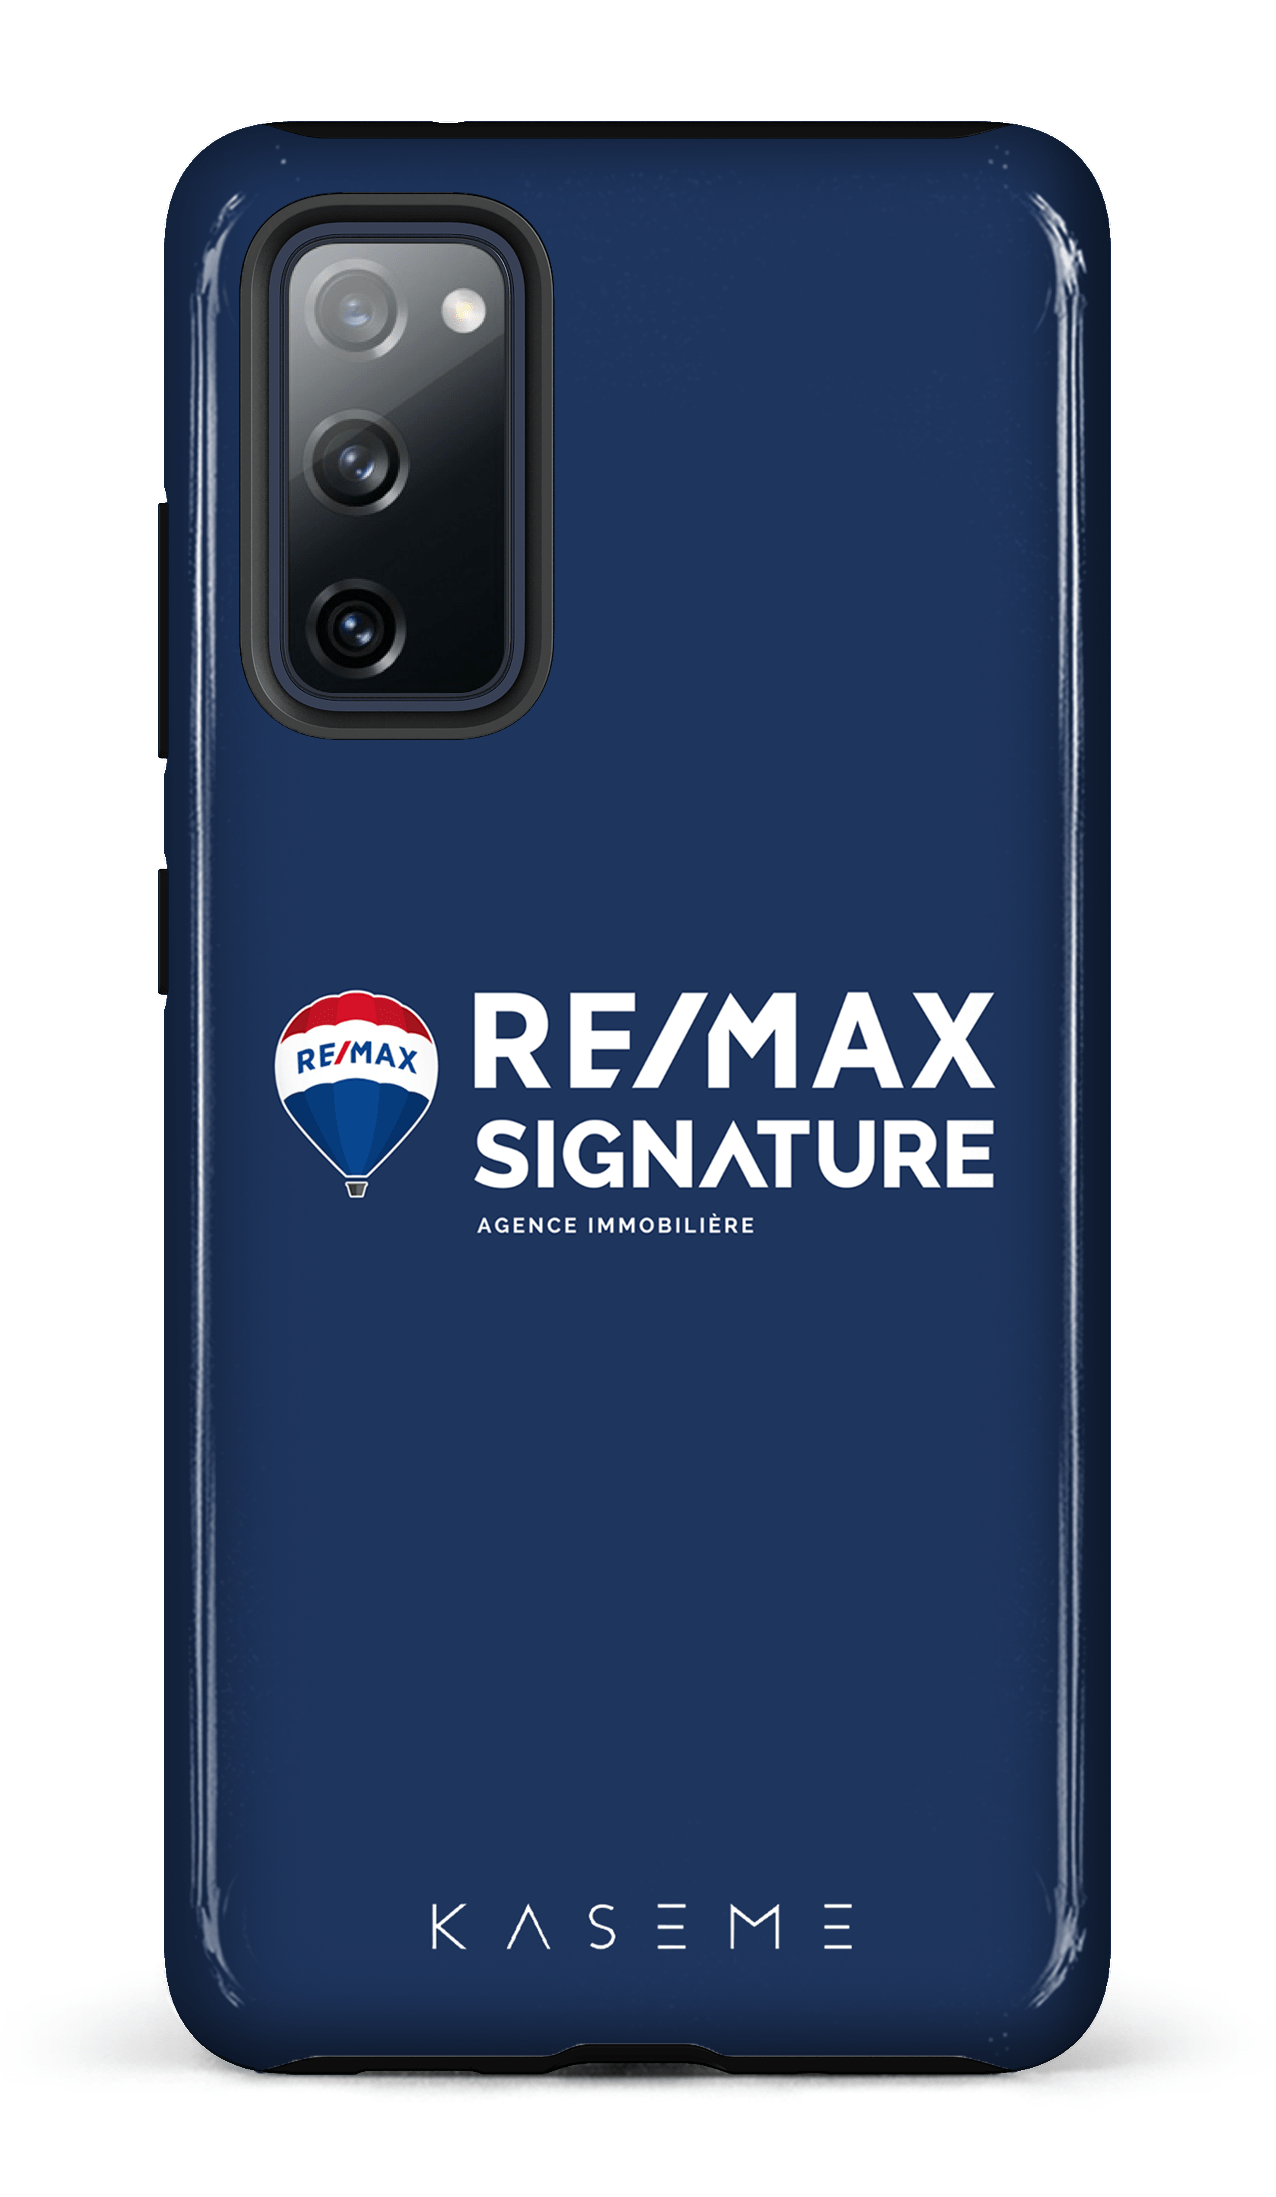 Remax Signature Bleu - Galaxy S20 FE